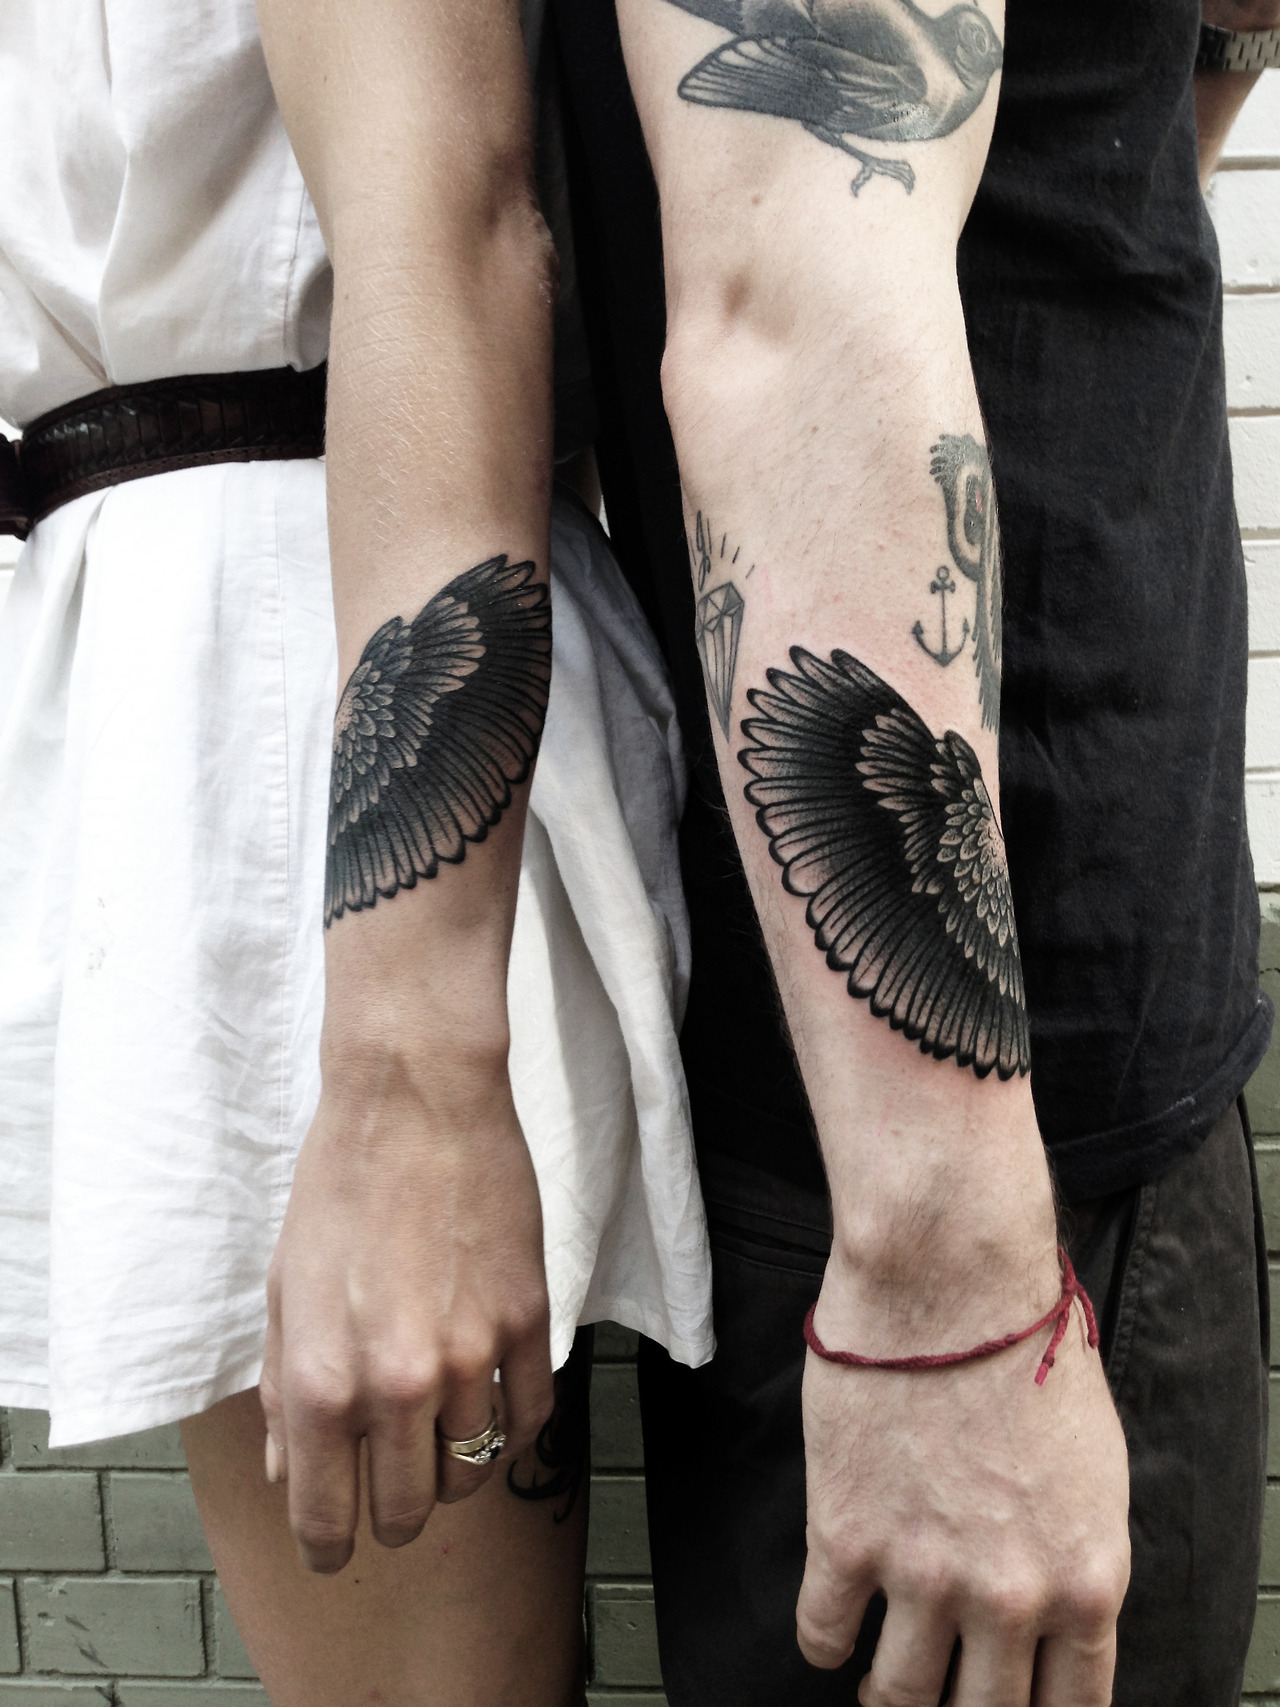 Matching Wing Tattoos